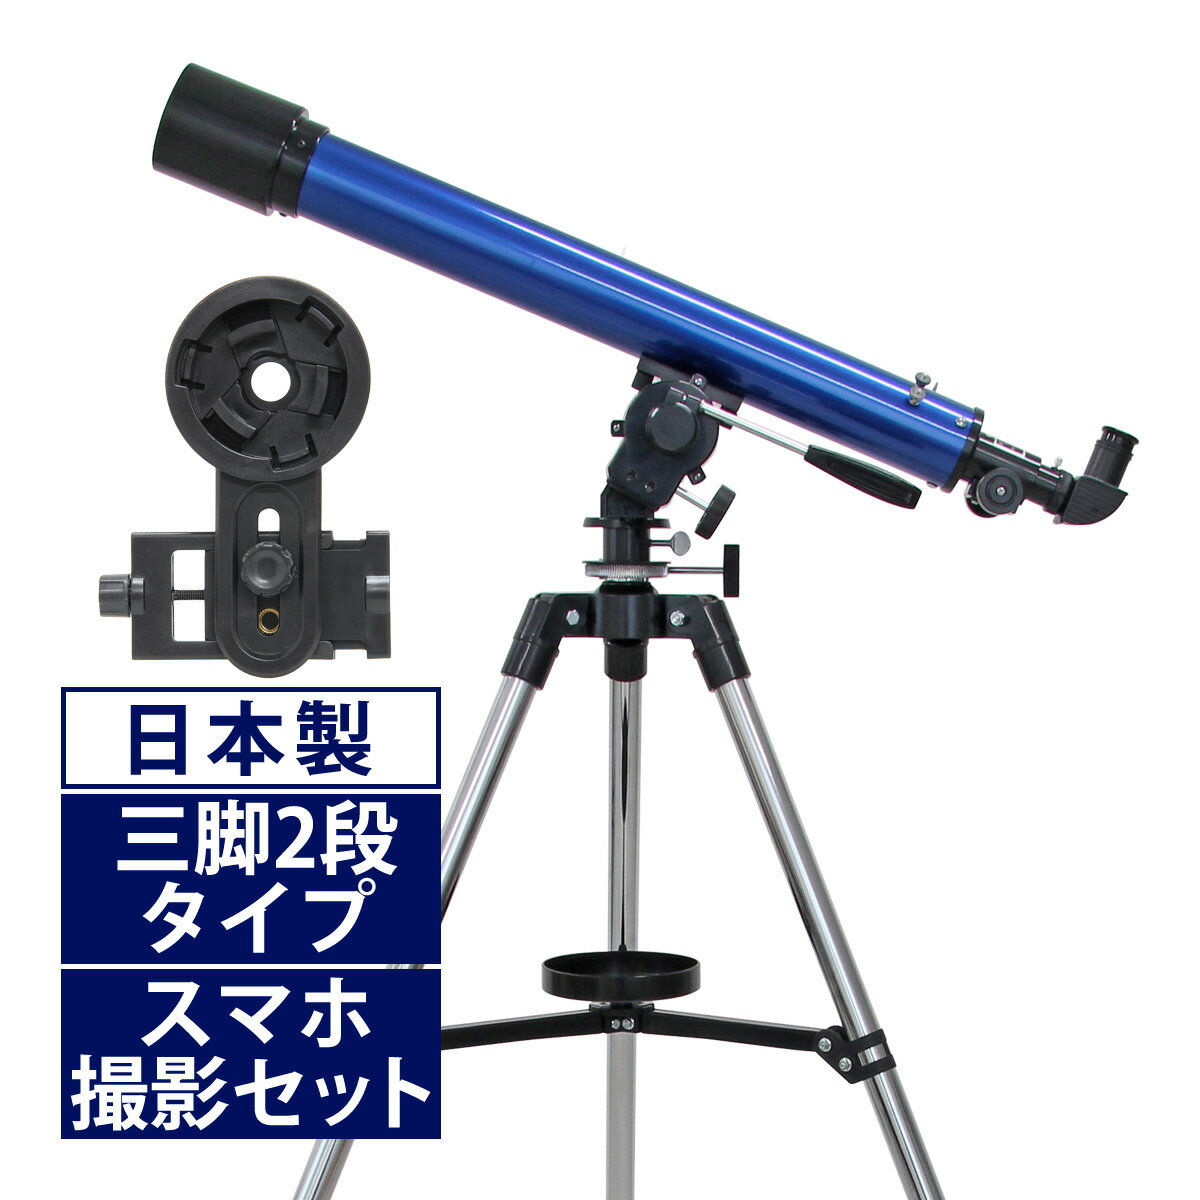 天体望遠鏡 スマホ 撮影 初心者 セット 望遠鏡 天体 子供 小学生 リゲルハイ60D 屈折式 天体ガイドブック付き 日本製